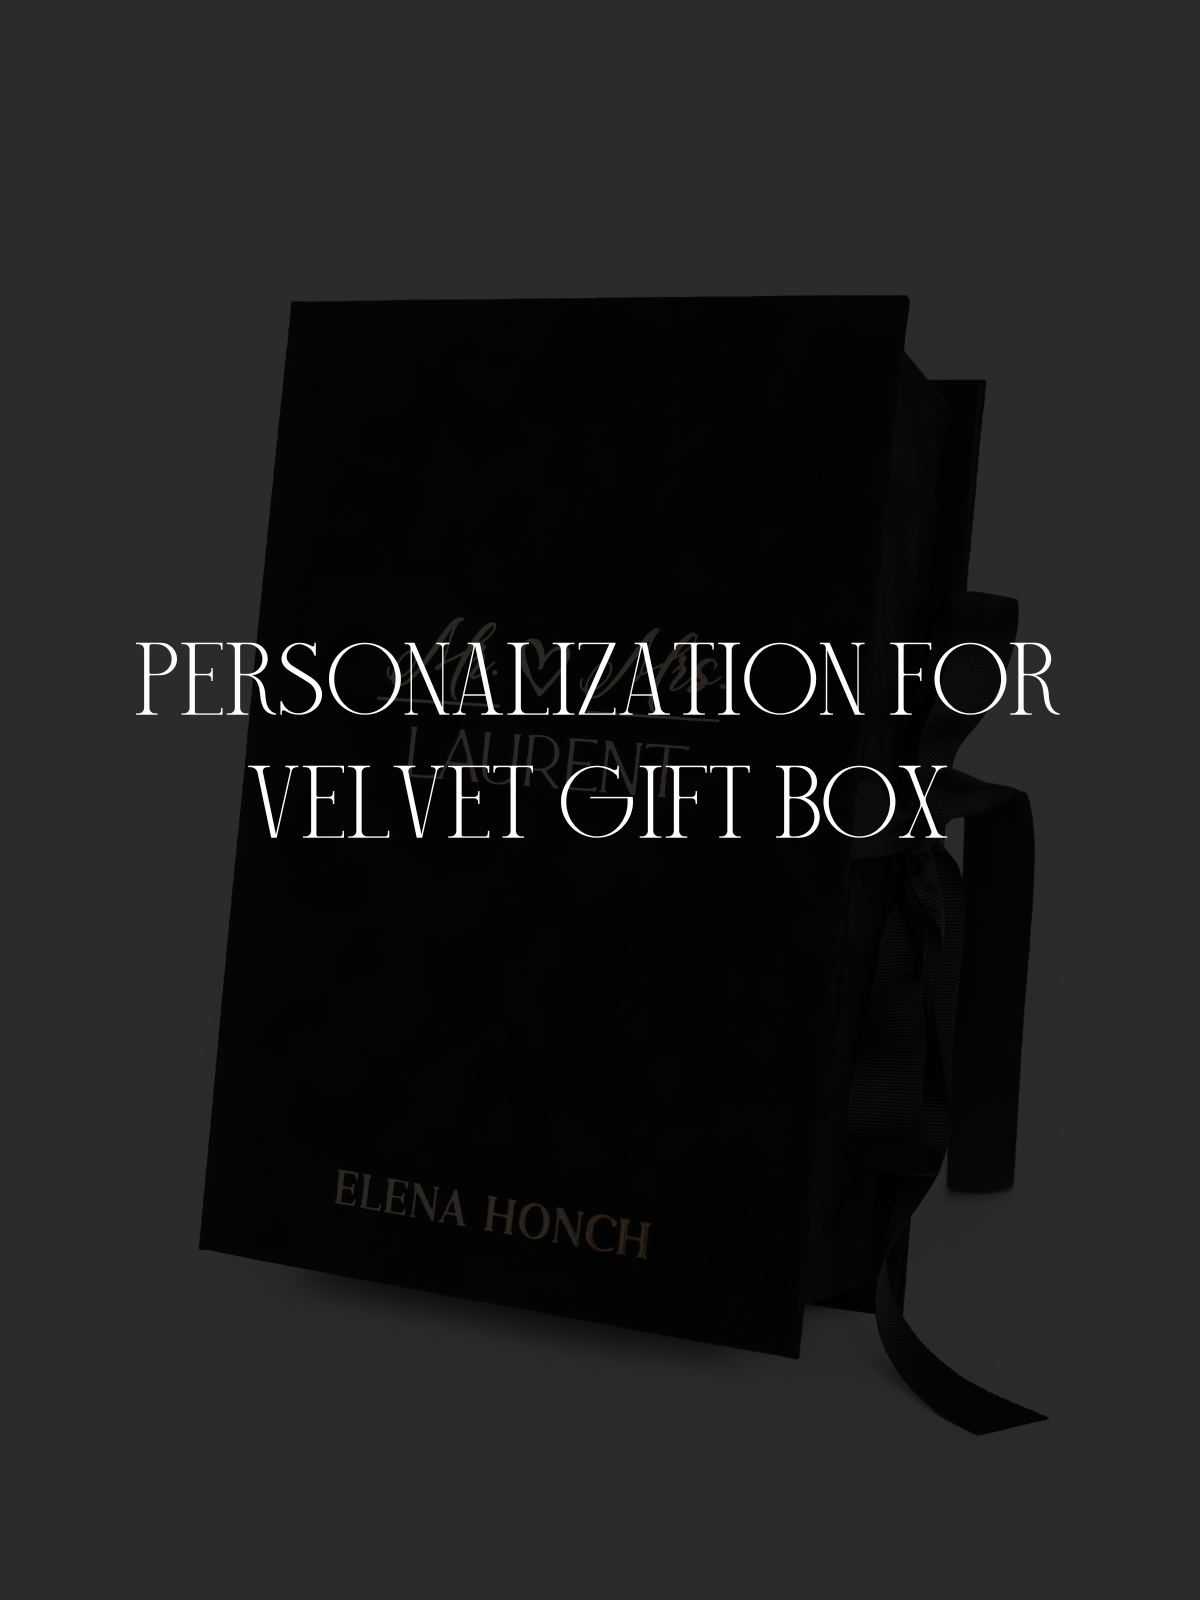 Personalization for velvet gift box